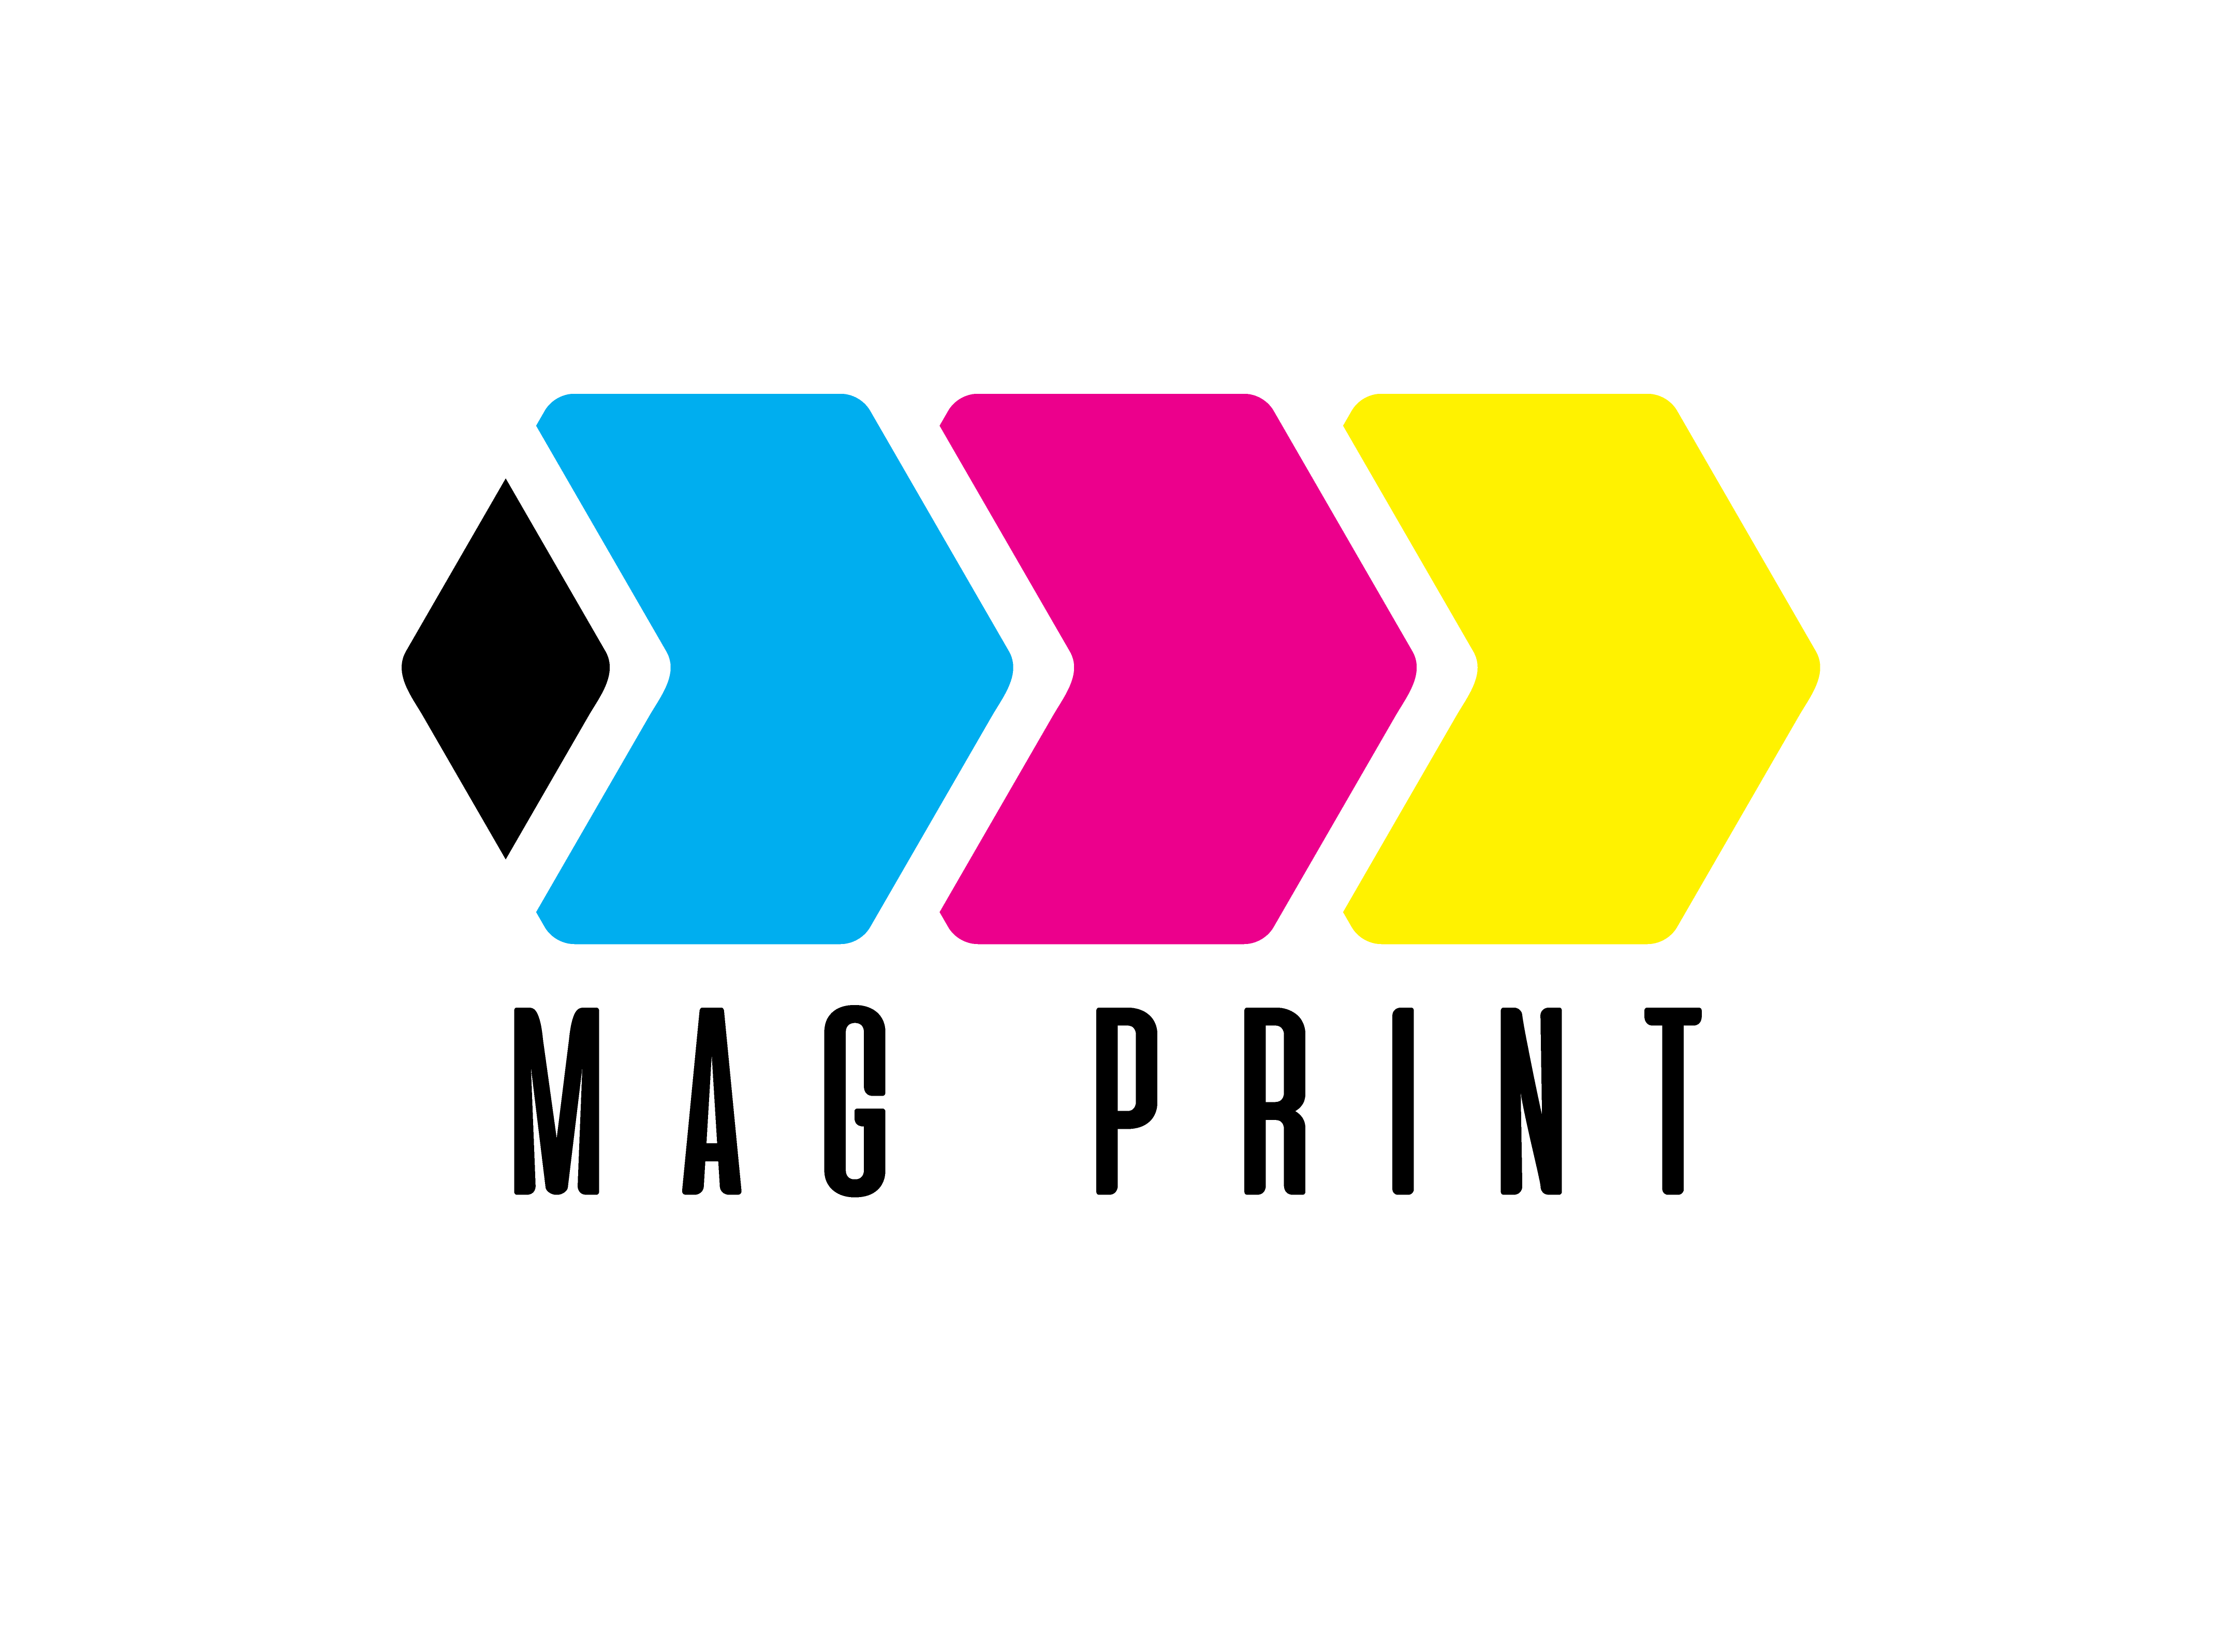 Magprint